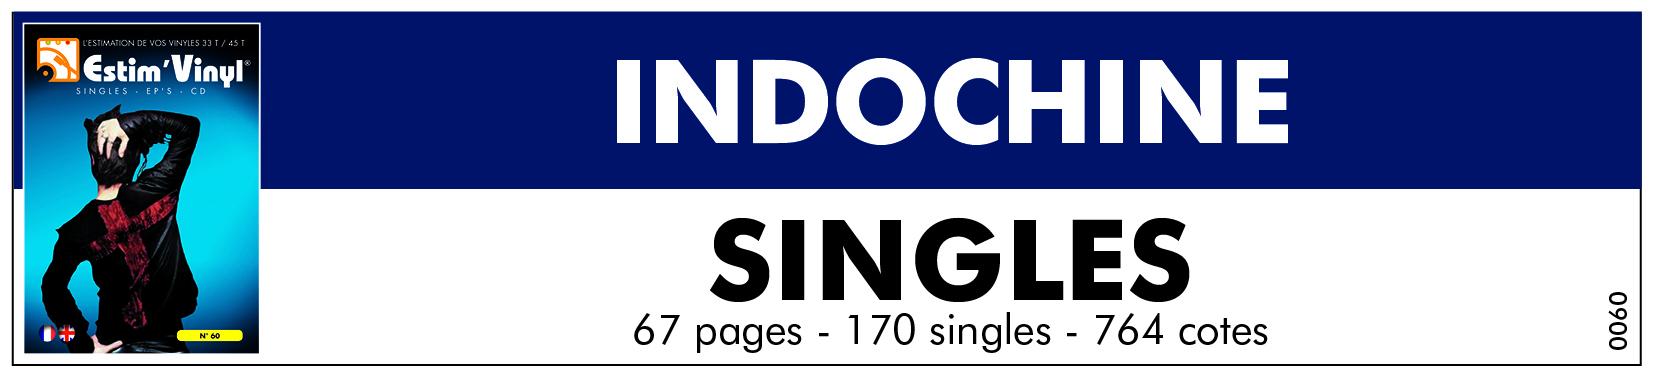 Retrouvez la cote des singles du groupe Indochine